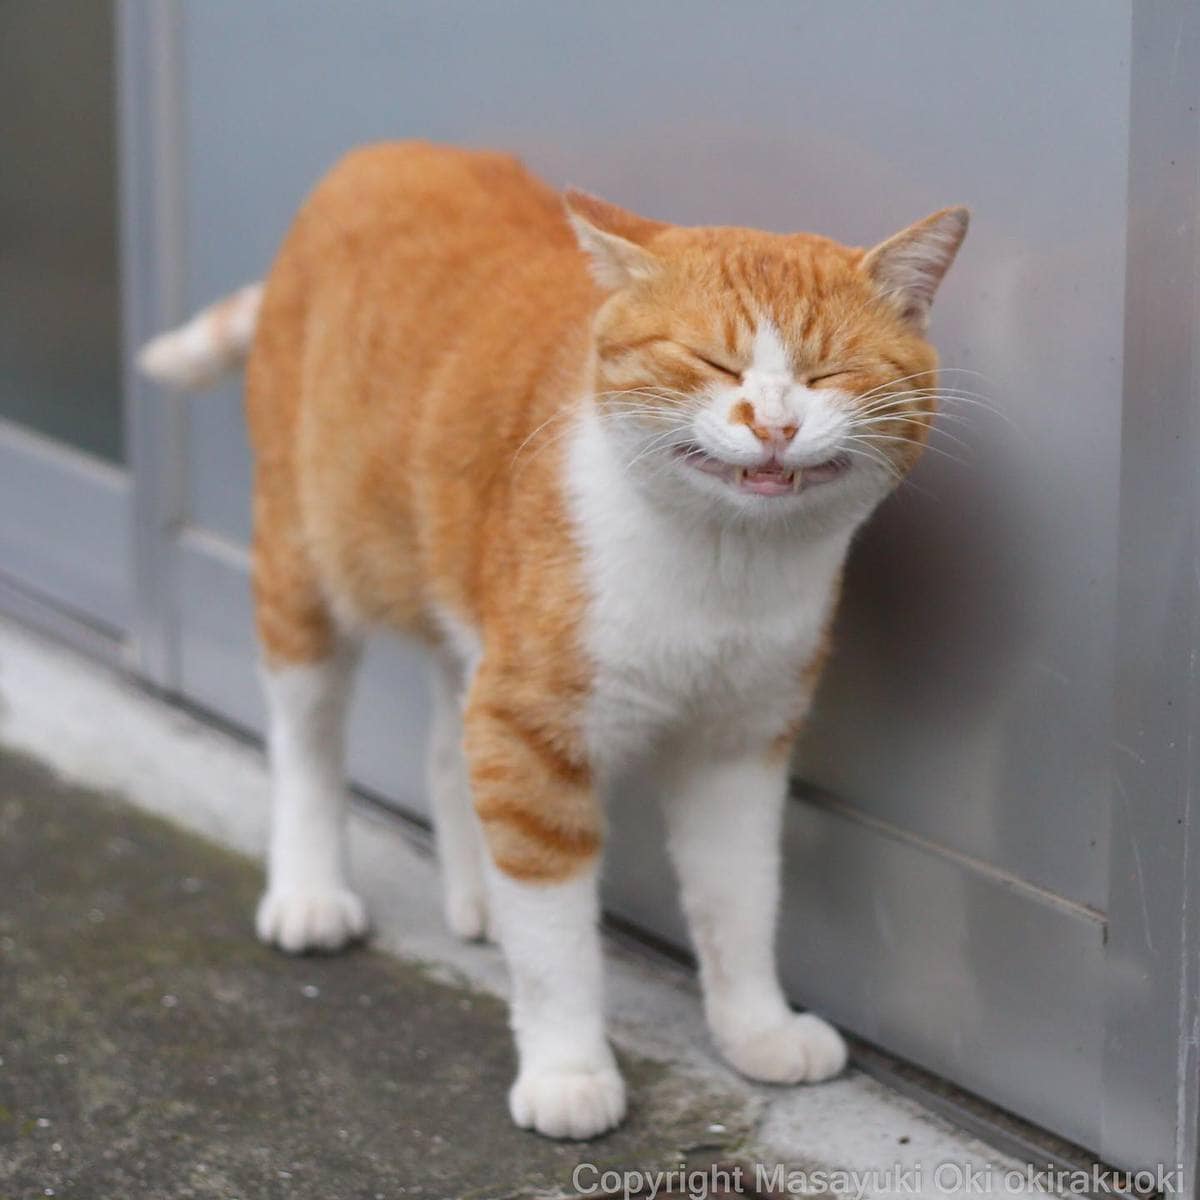 20 снимков уличных котов от японского фотографа, который как никто умеет запечатлевать харизму этих бродяг 68